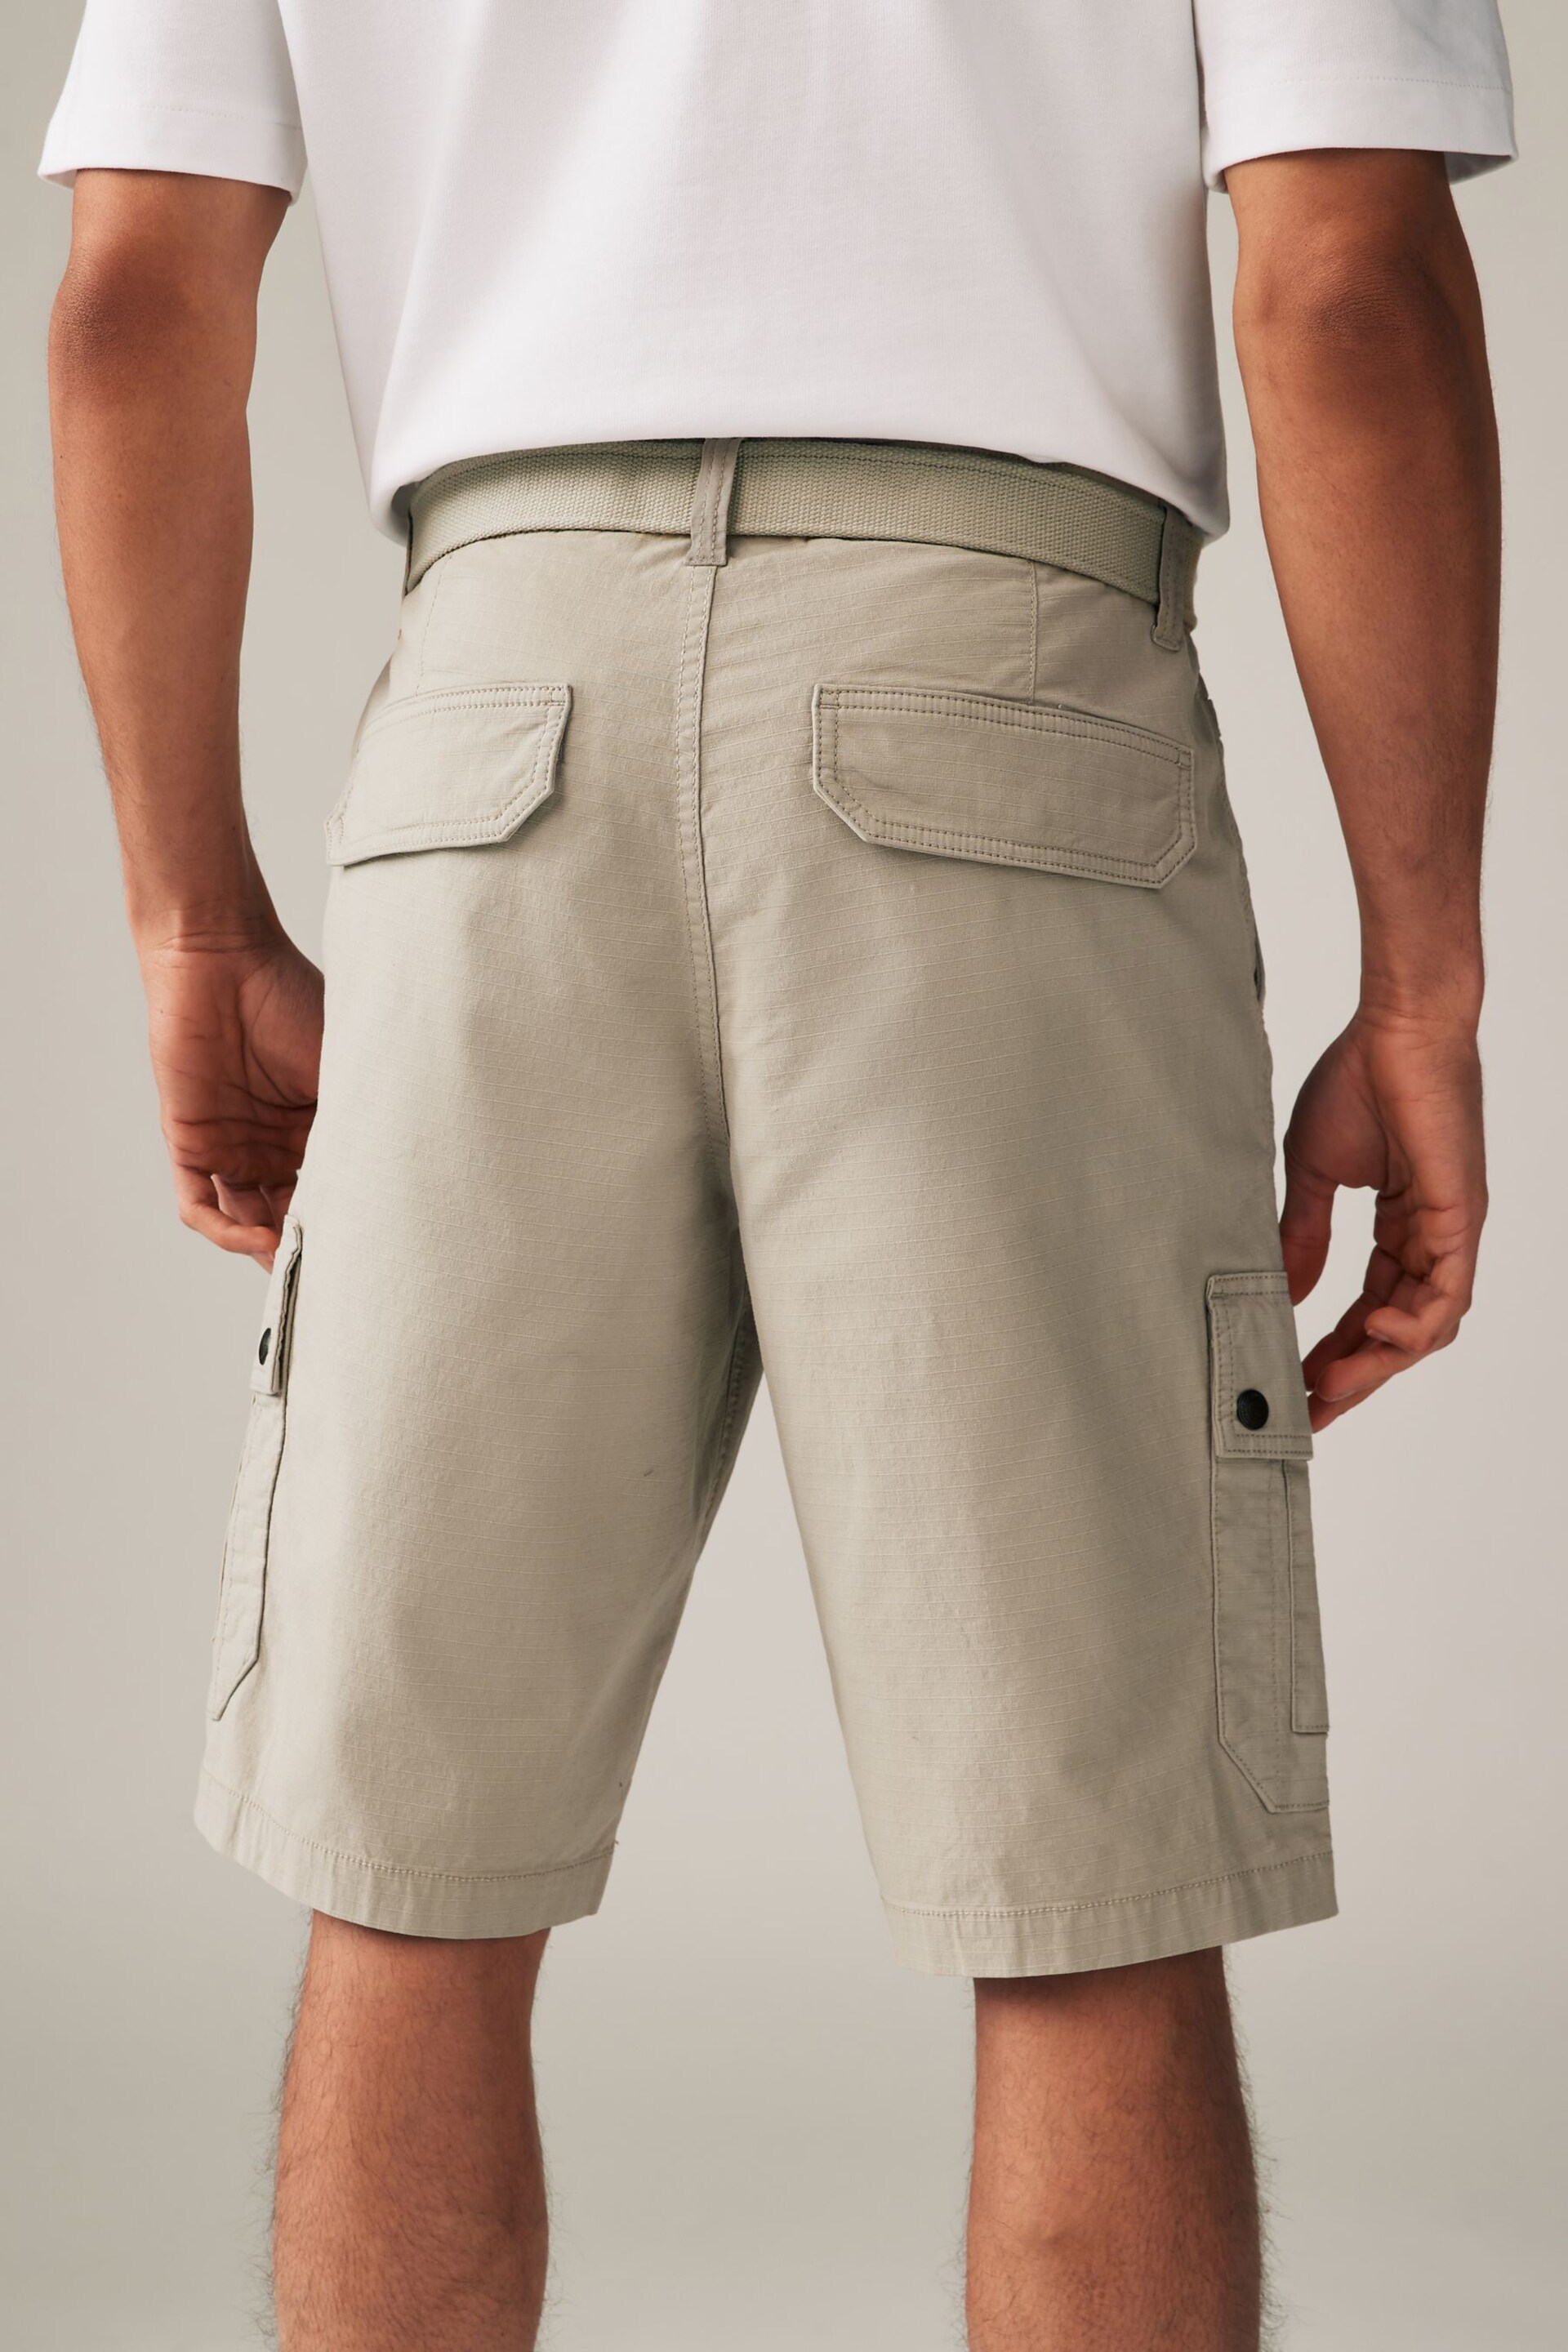 Stone Belted Cargo Shorts - Image 4 of 9